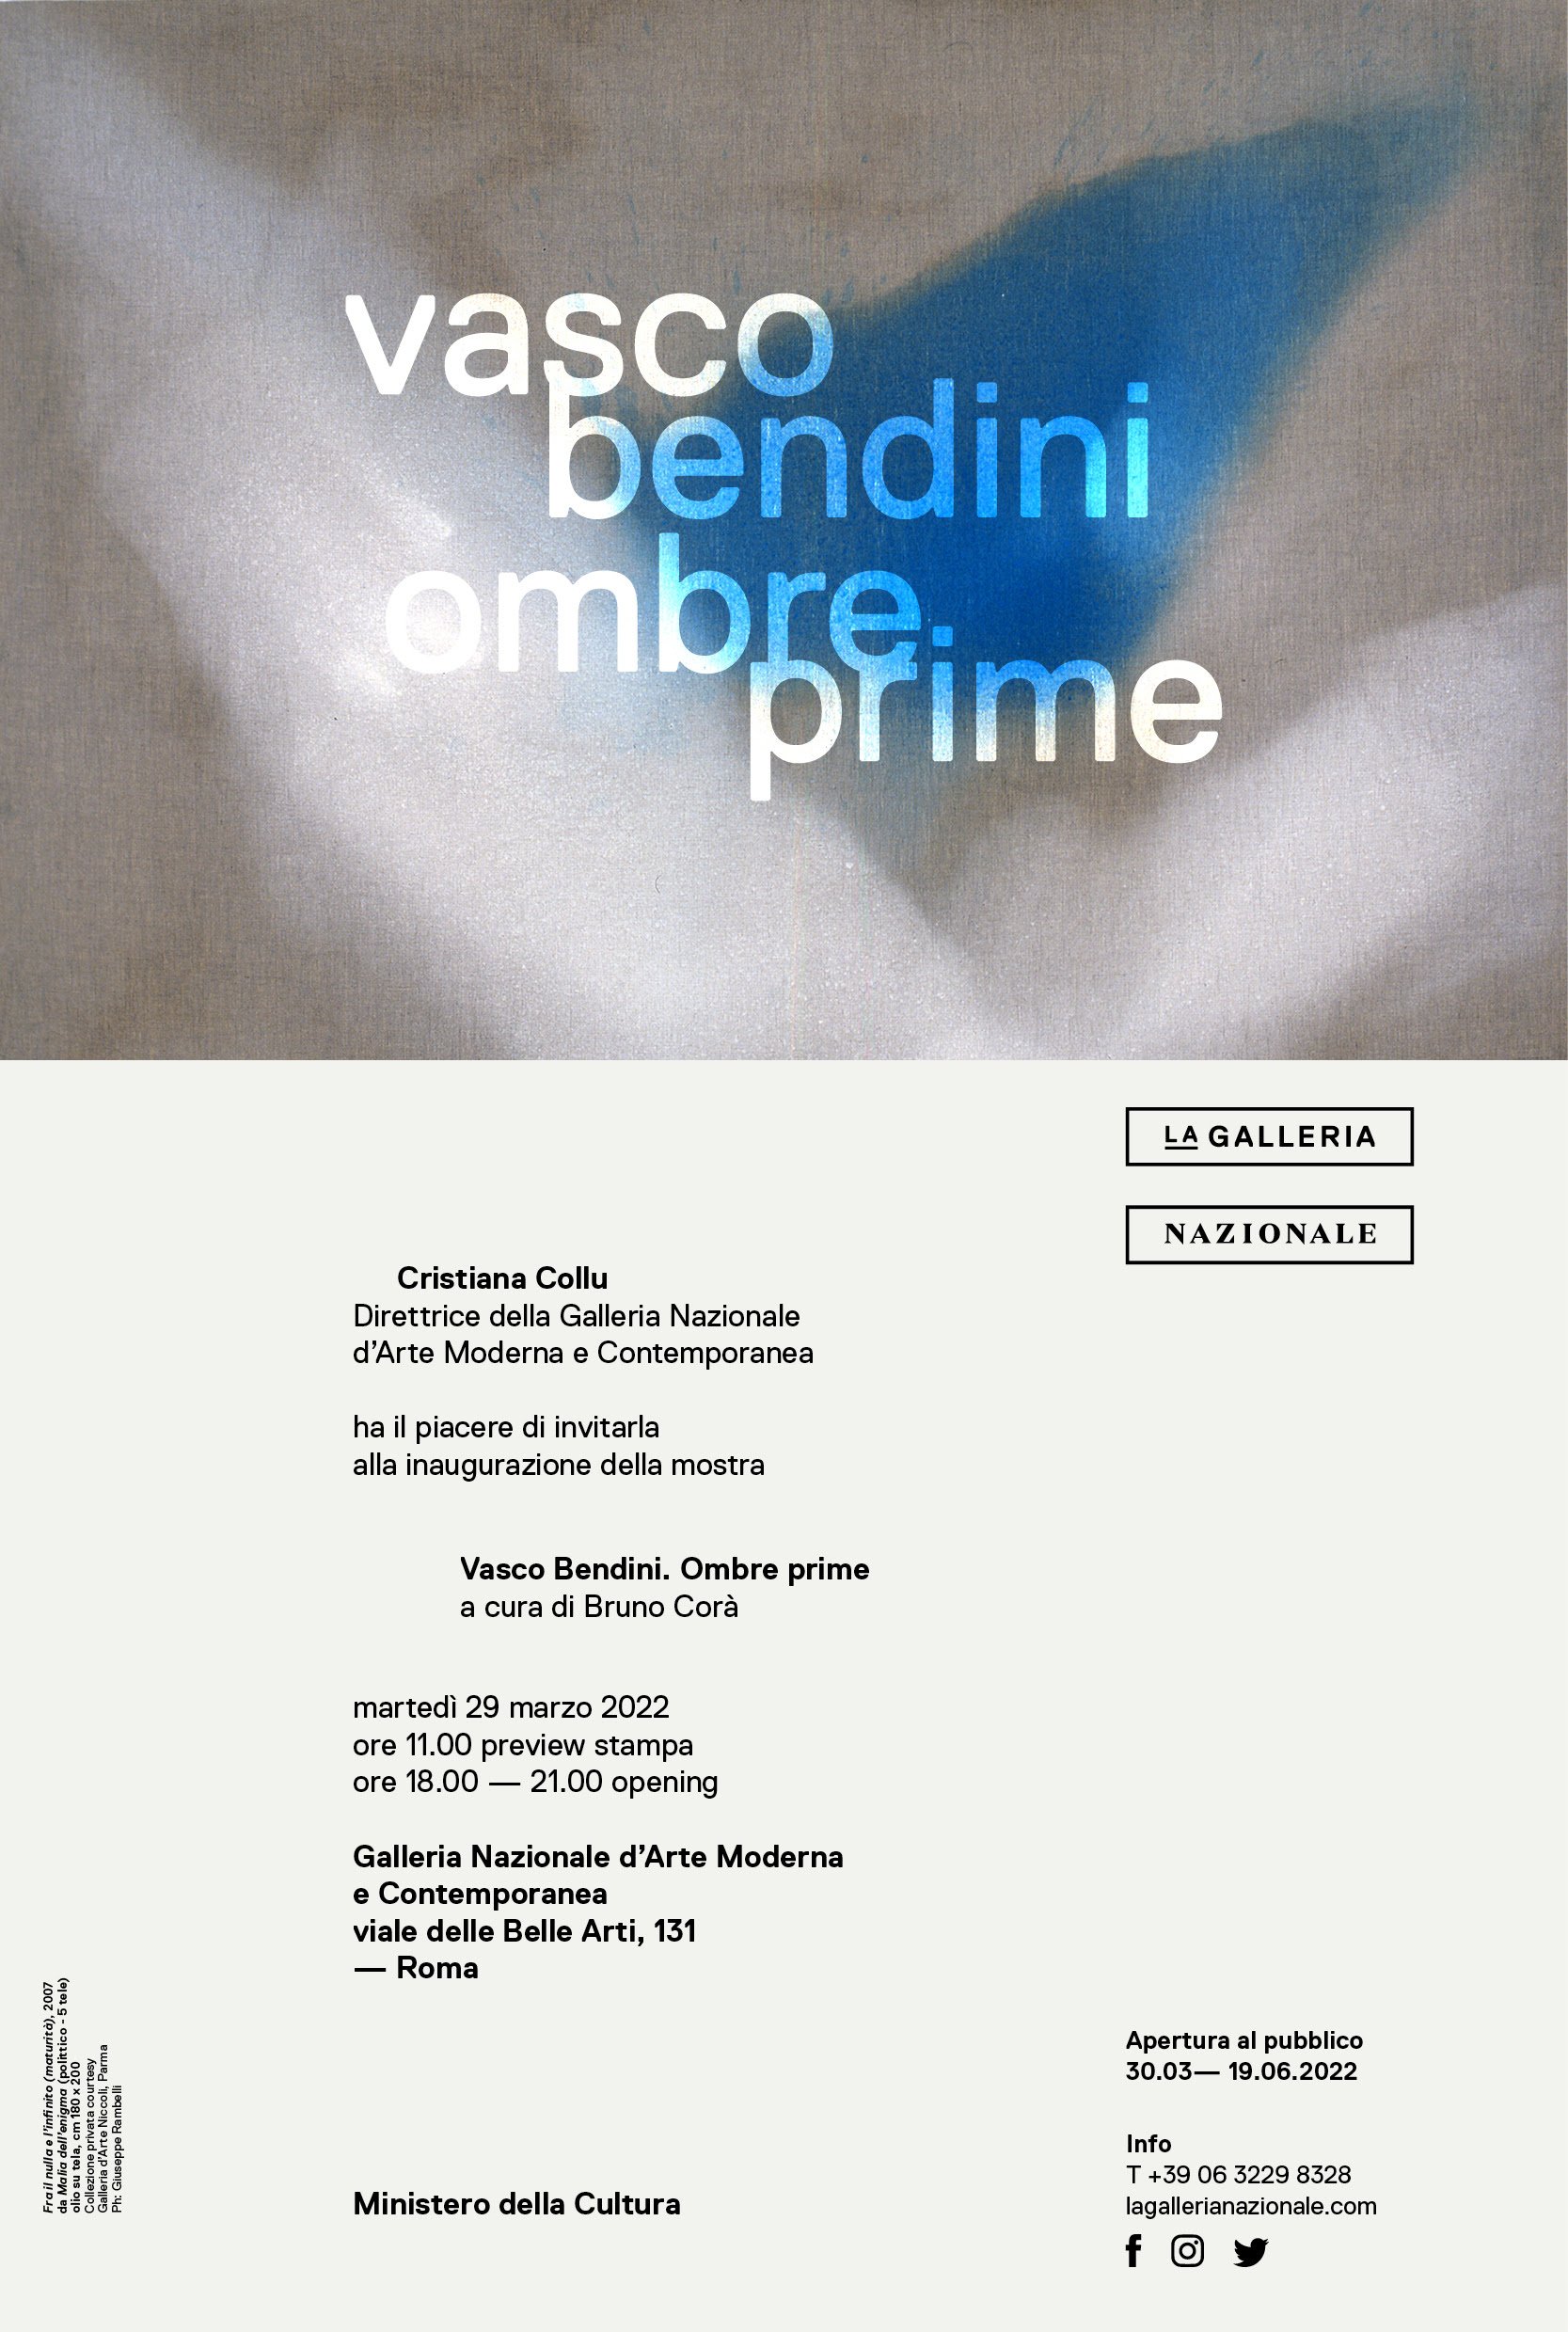 Vasco Bendini – Ombre prime